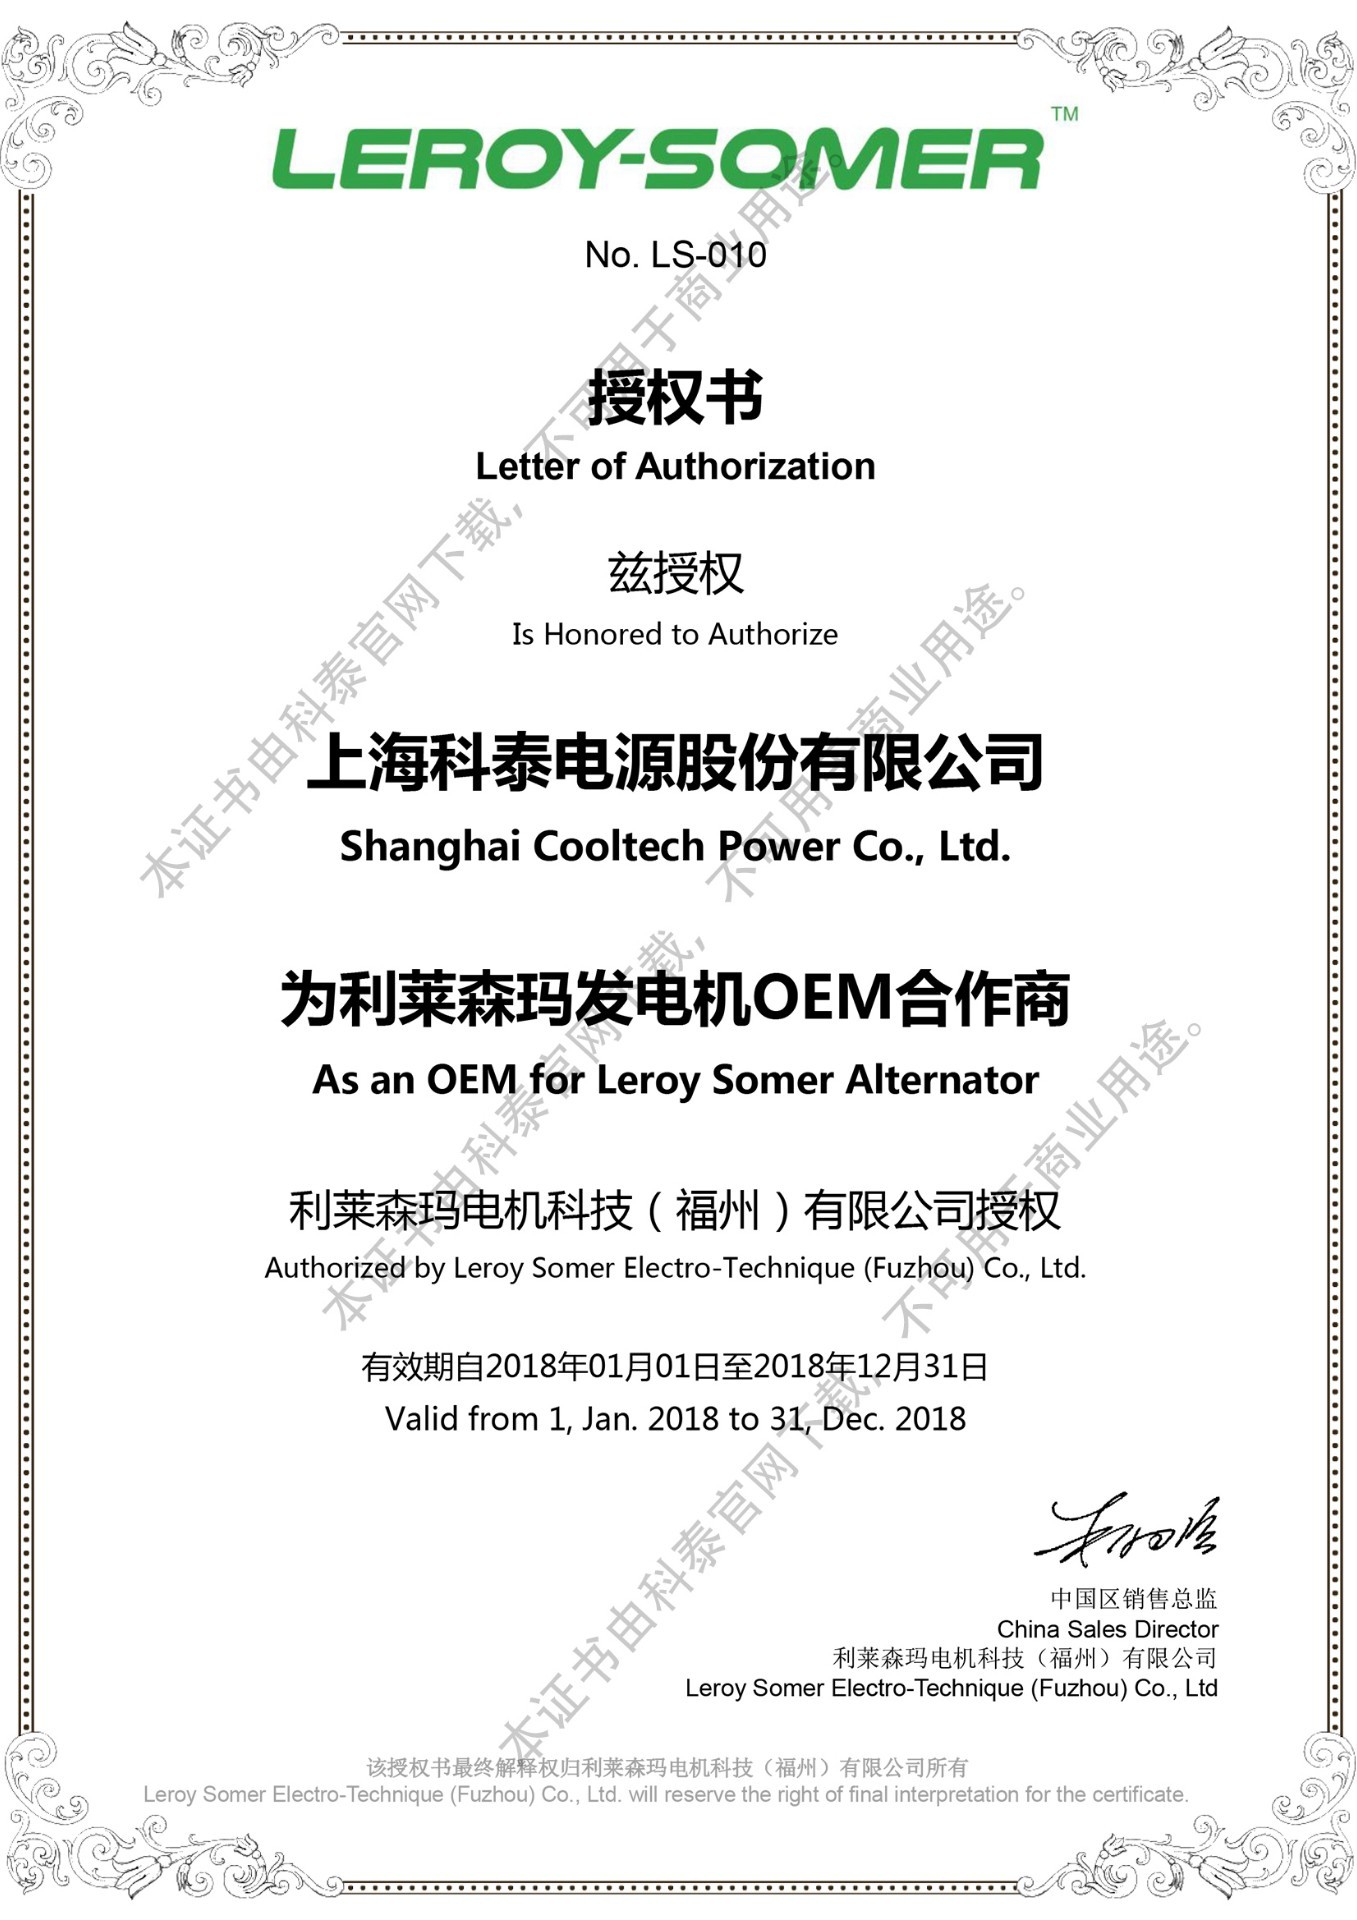 2018年利莱森玛OEM证书